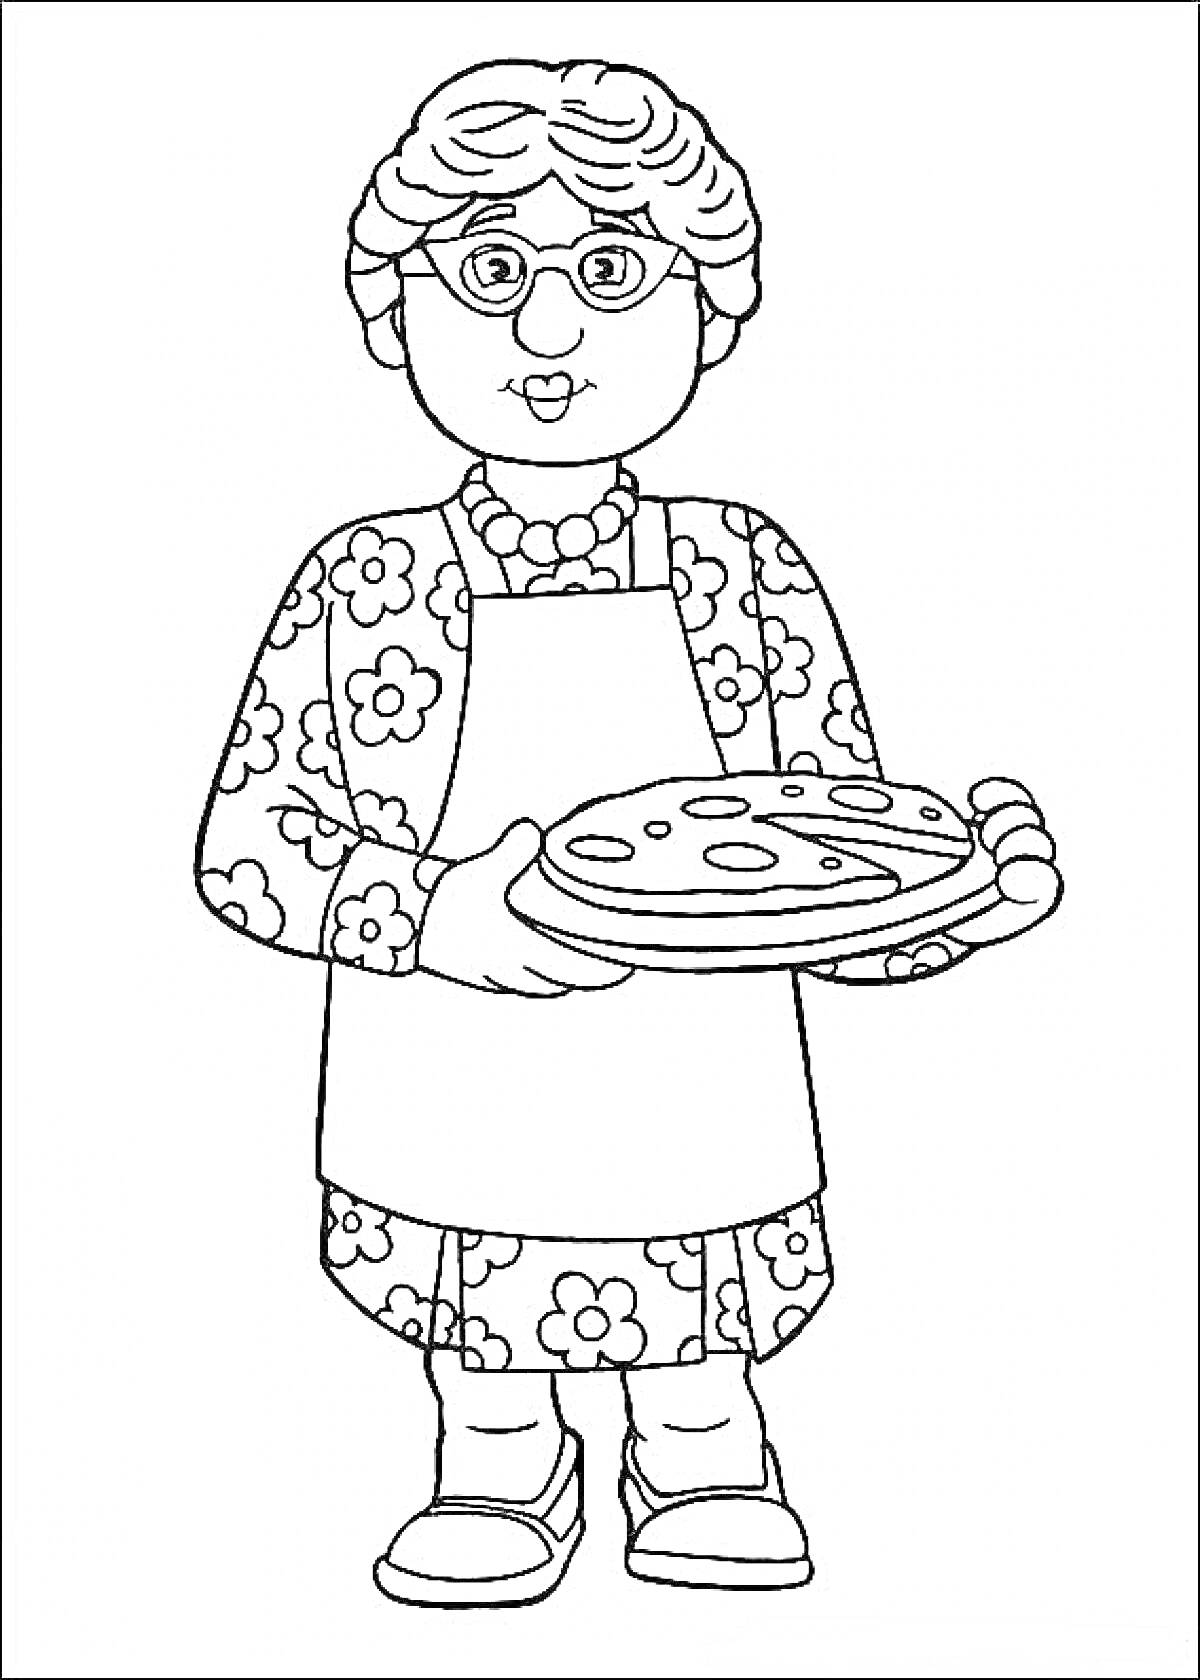 Раскраска Бабушка с пиццей в очках, цветочном платье и фартуке.